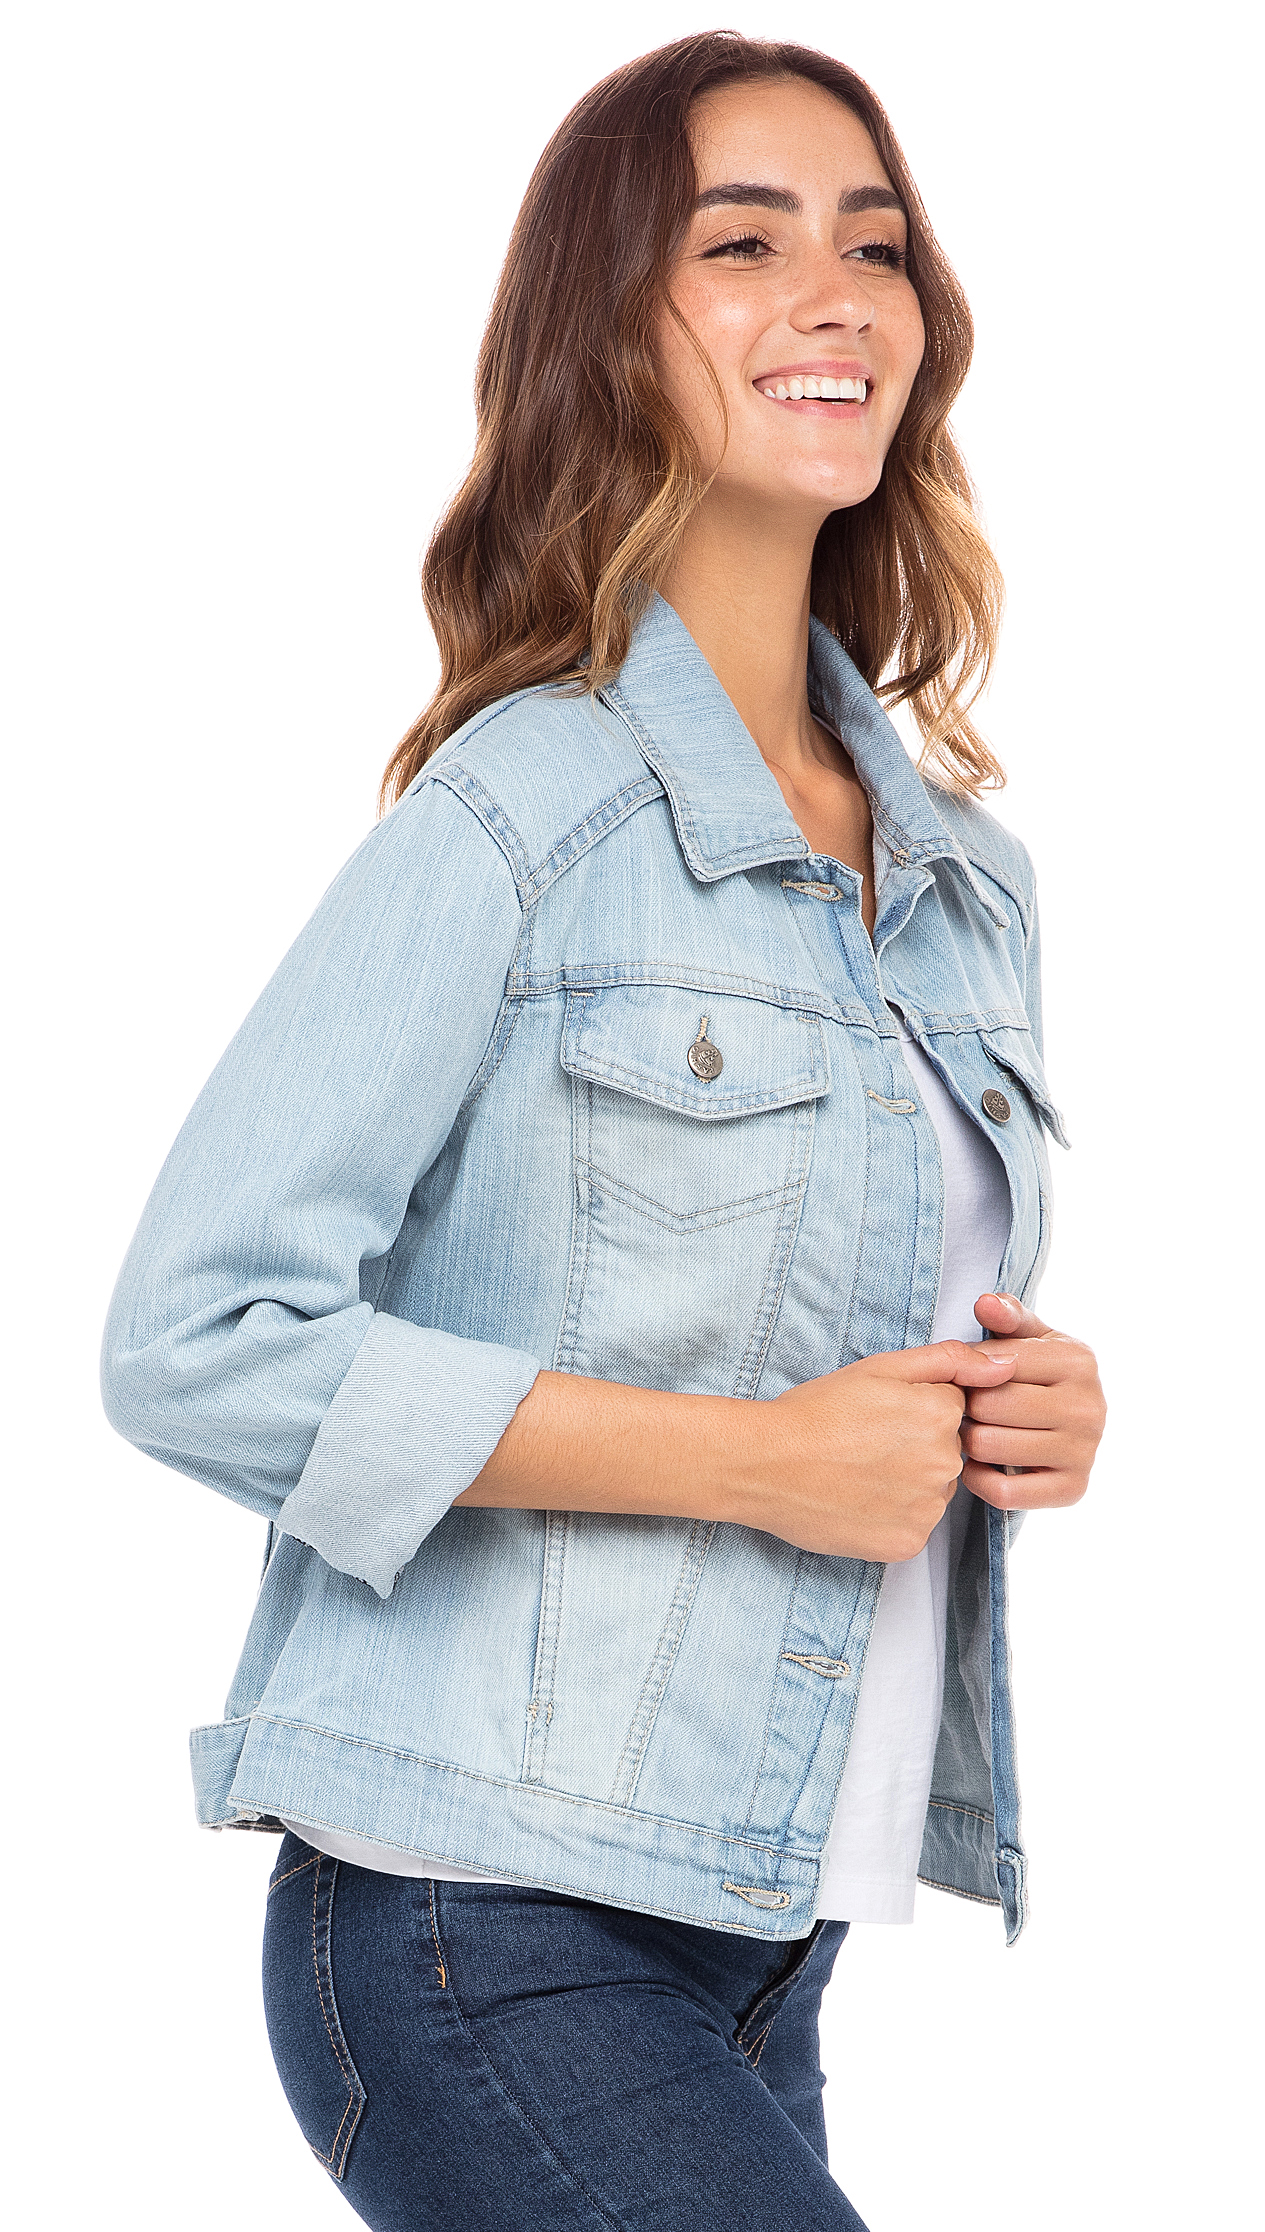 SKYLINEWEARS Women Denim Jacket Button UP Long Sleeve Ladies Stretch Trucker Jean Jackets - image 2 of 5